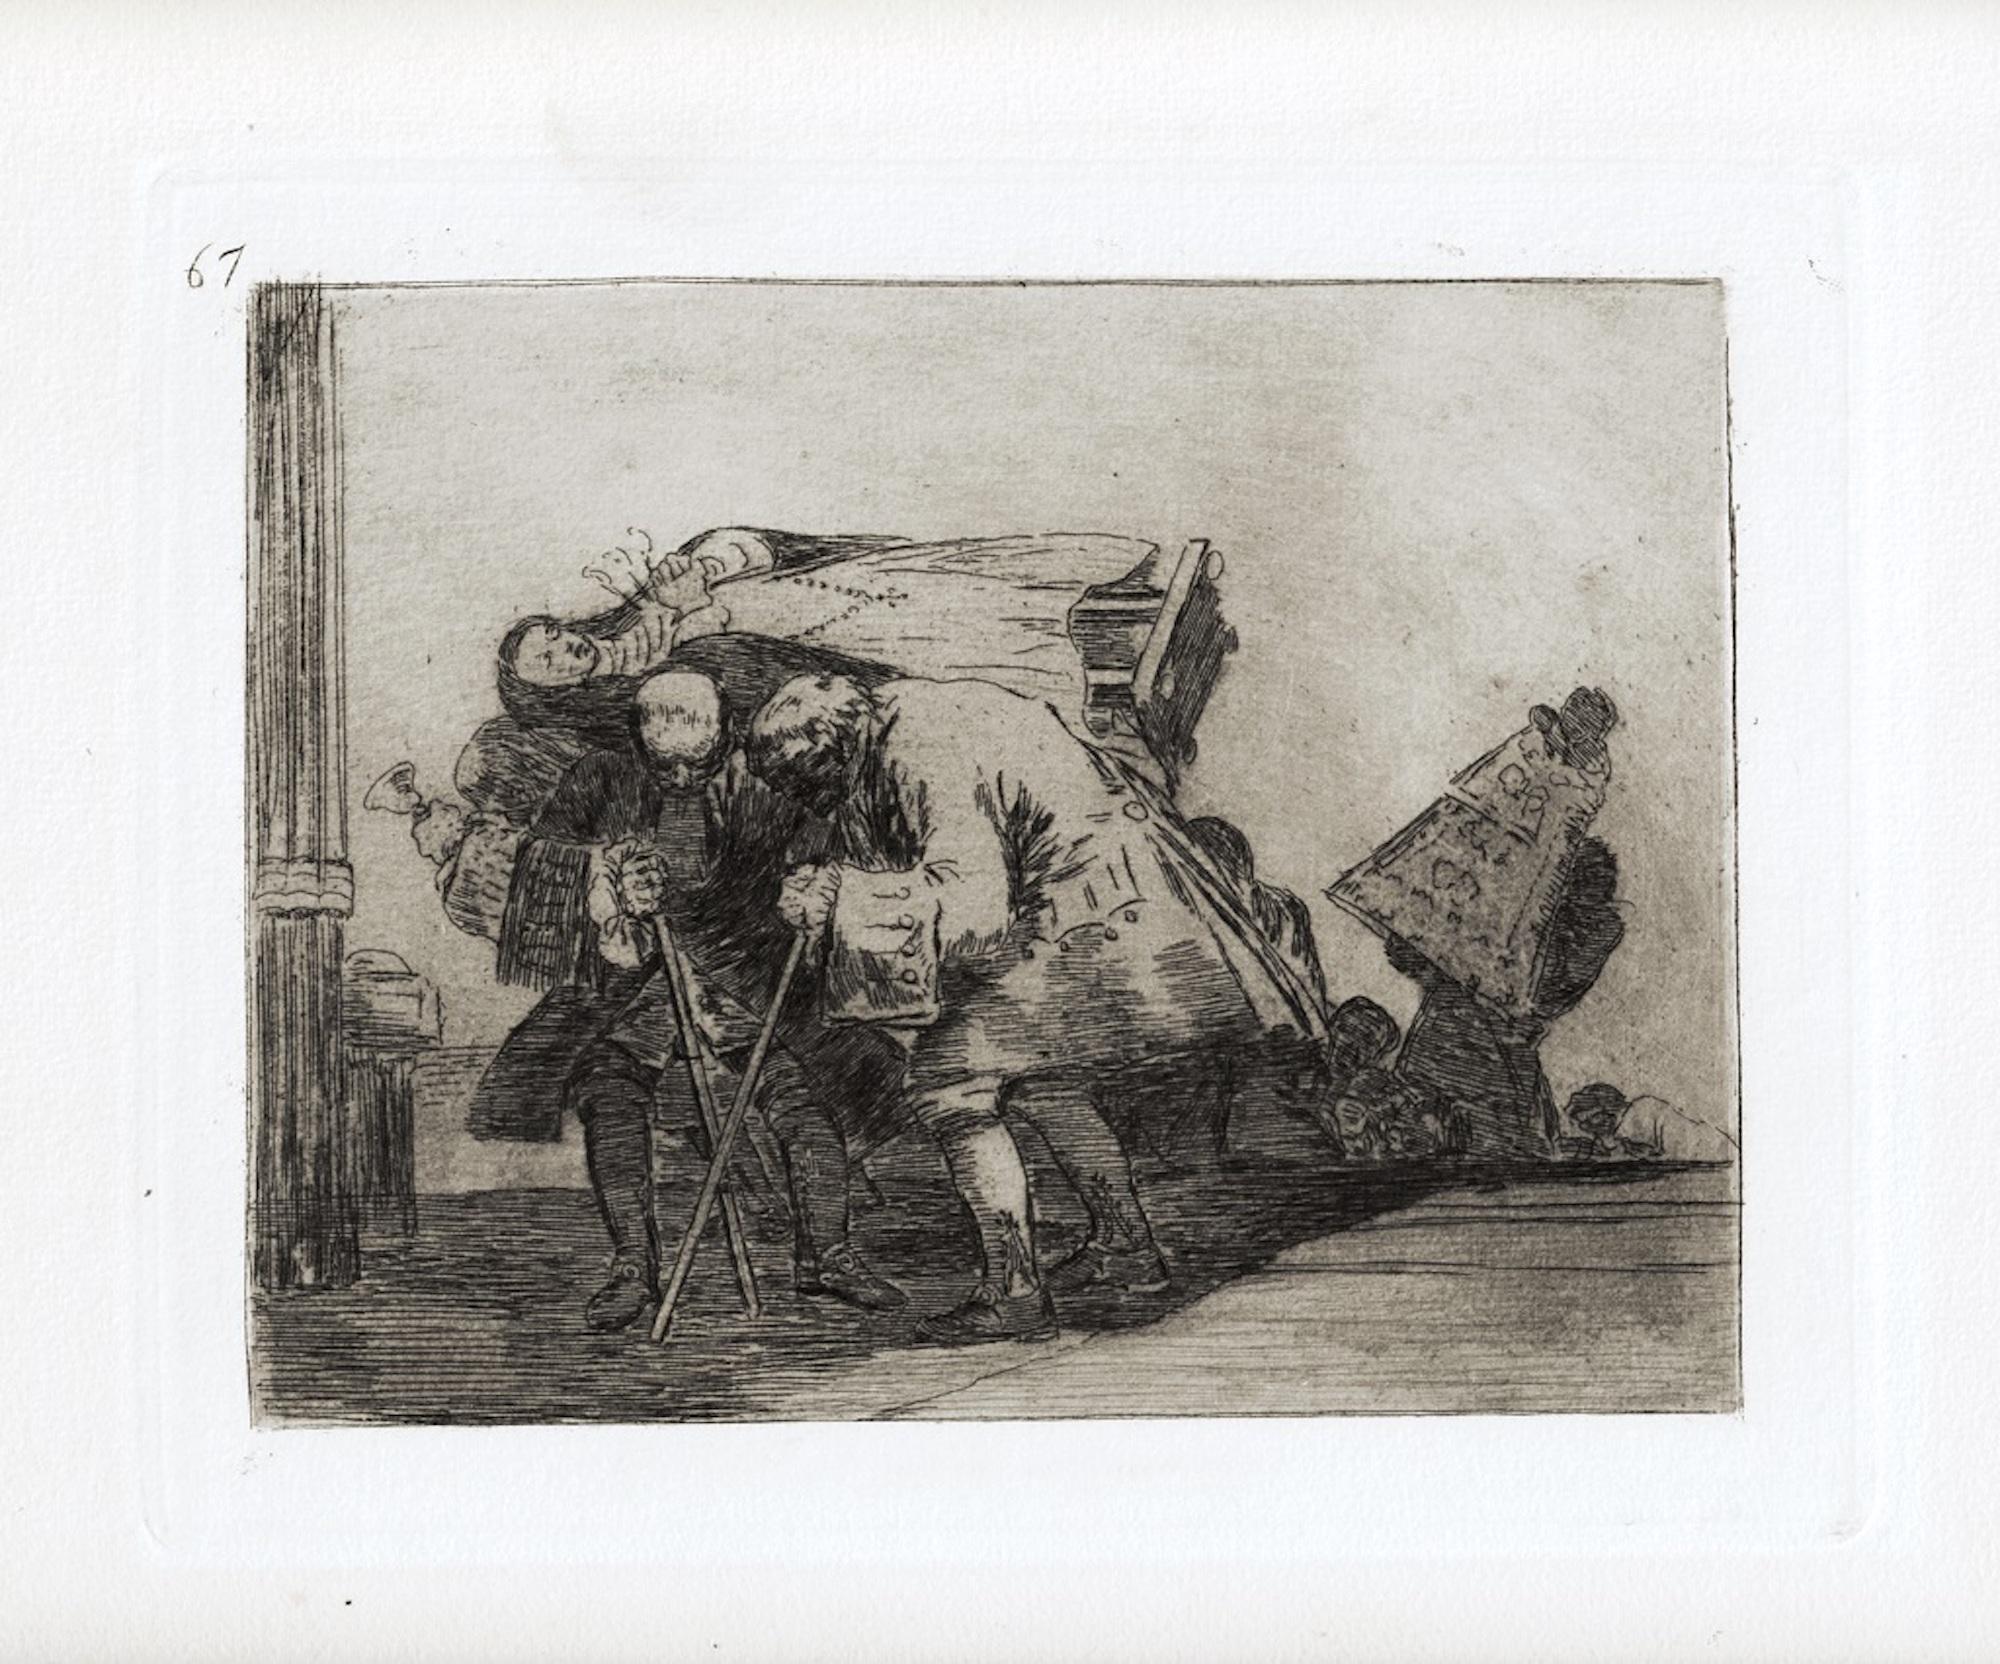 Esta no lo es menos ist ein Originalkunstwerk des großen spanischen Künstlers Francisco Goya aus dem Jahr 1810. 

Original-Radierung auf Papier. 

Das Werk gehört zu der berühmten Serie "Los Desastres de la Guerra", die in den Jahren des Spanischen